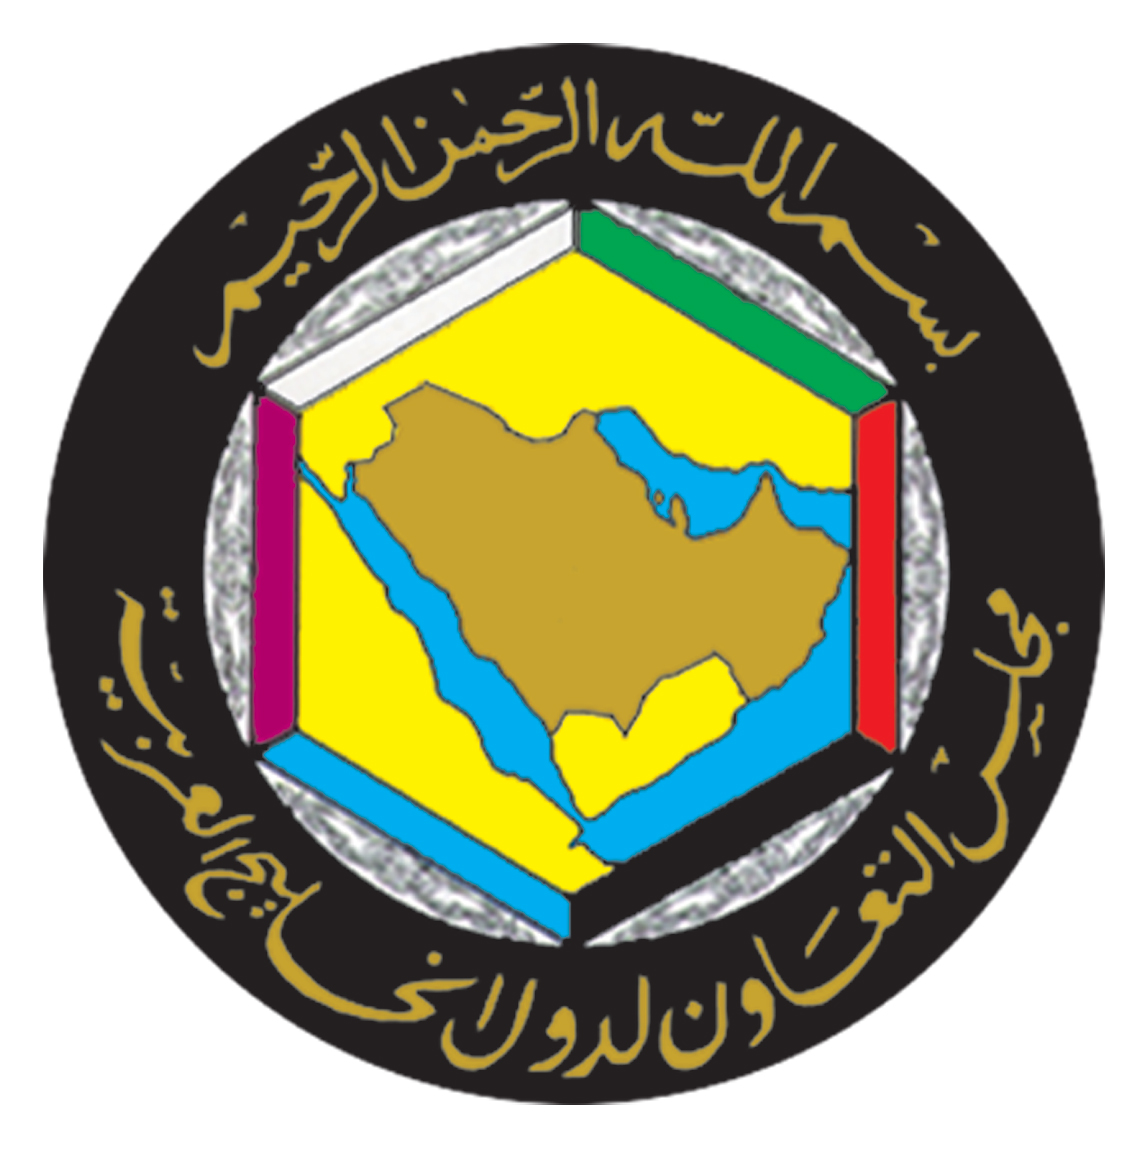 البيان الختامي للمجلس الوزاري لمجلس التعاون لدول الخليج العربية